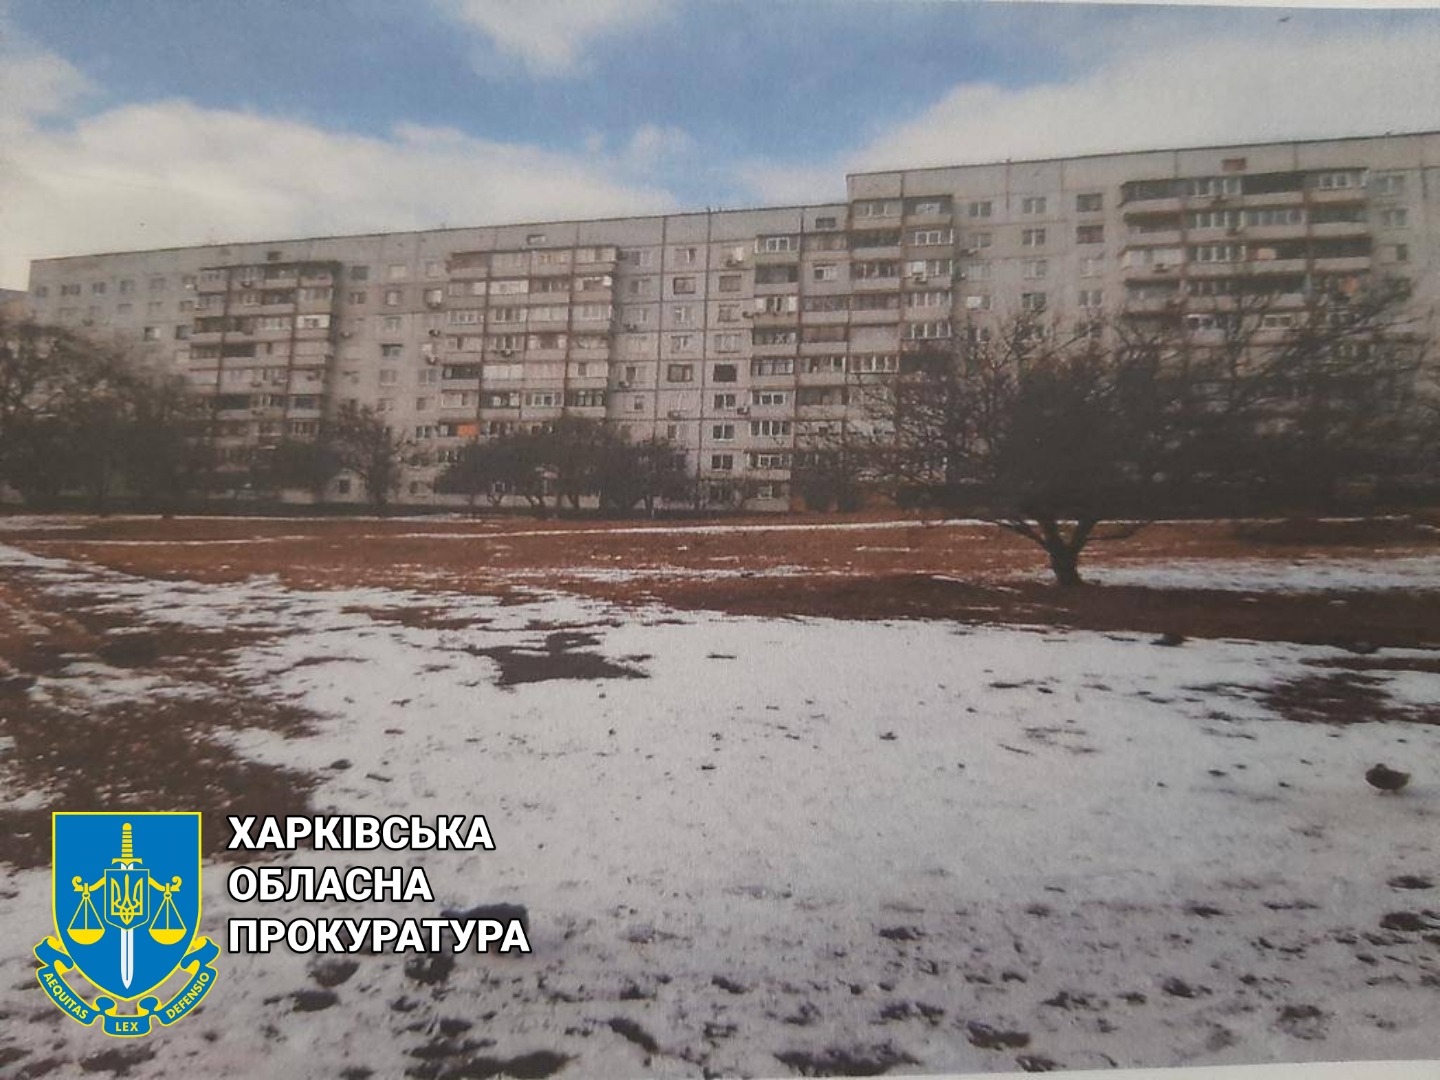 Прокуратура вимагає повернути земельну ділянку вартістю майже 800 тисяч гривень Харківській міській територіальній громаді